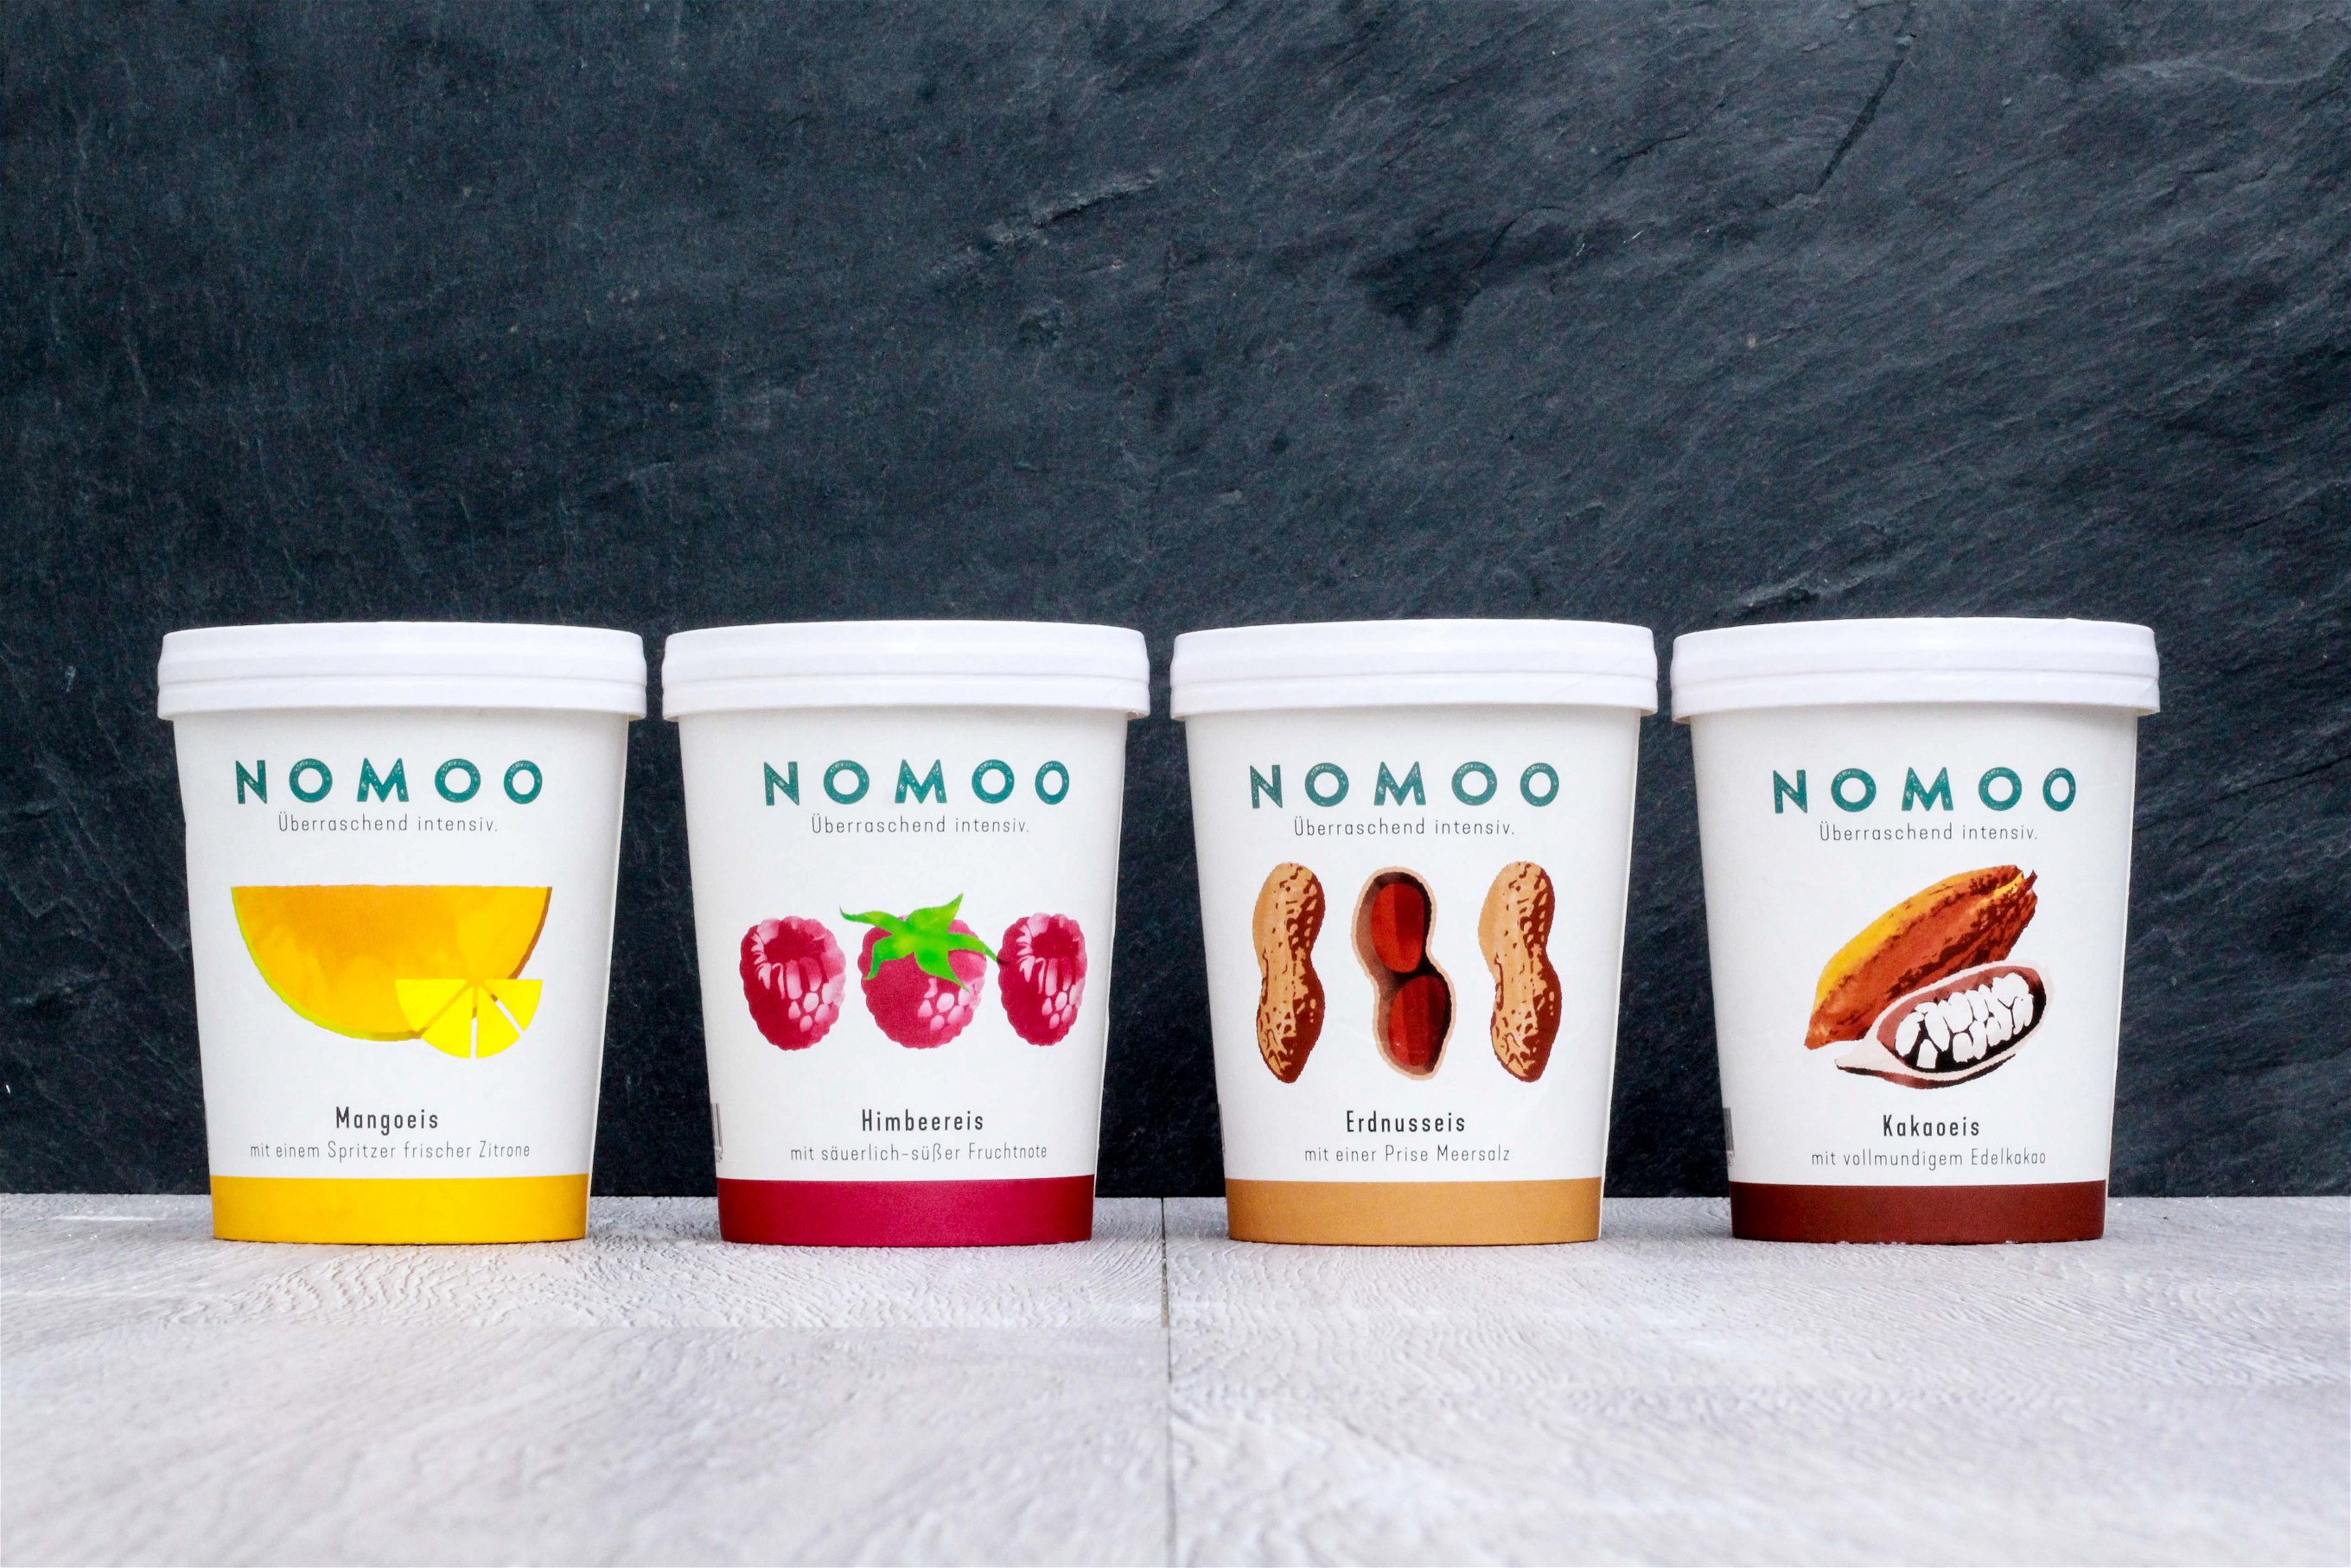 Nomoo kommt ohne tierische Produkte aus und büßt dabei nicht an Geschmack ein. 